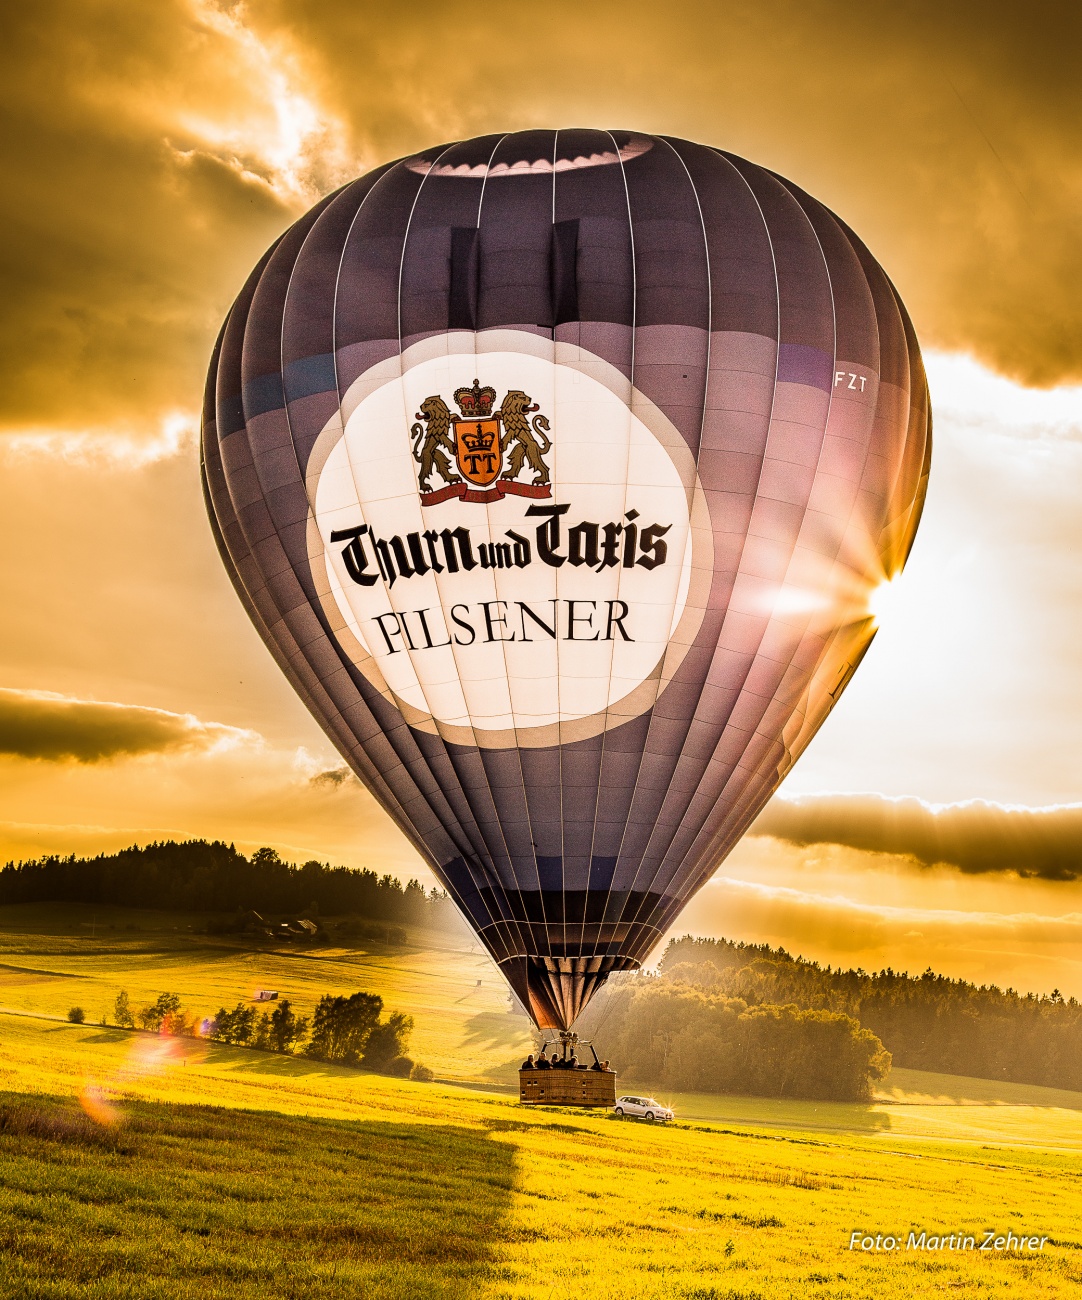 Foto: Martin Zehrer - Aus dem Archiv: Erst durch die Luft gefahren und dann... Ballon im Lande-Anflug... <br />
<br />
Bei Neusteinreuth 